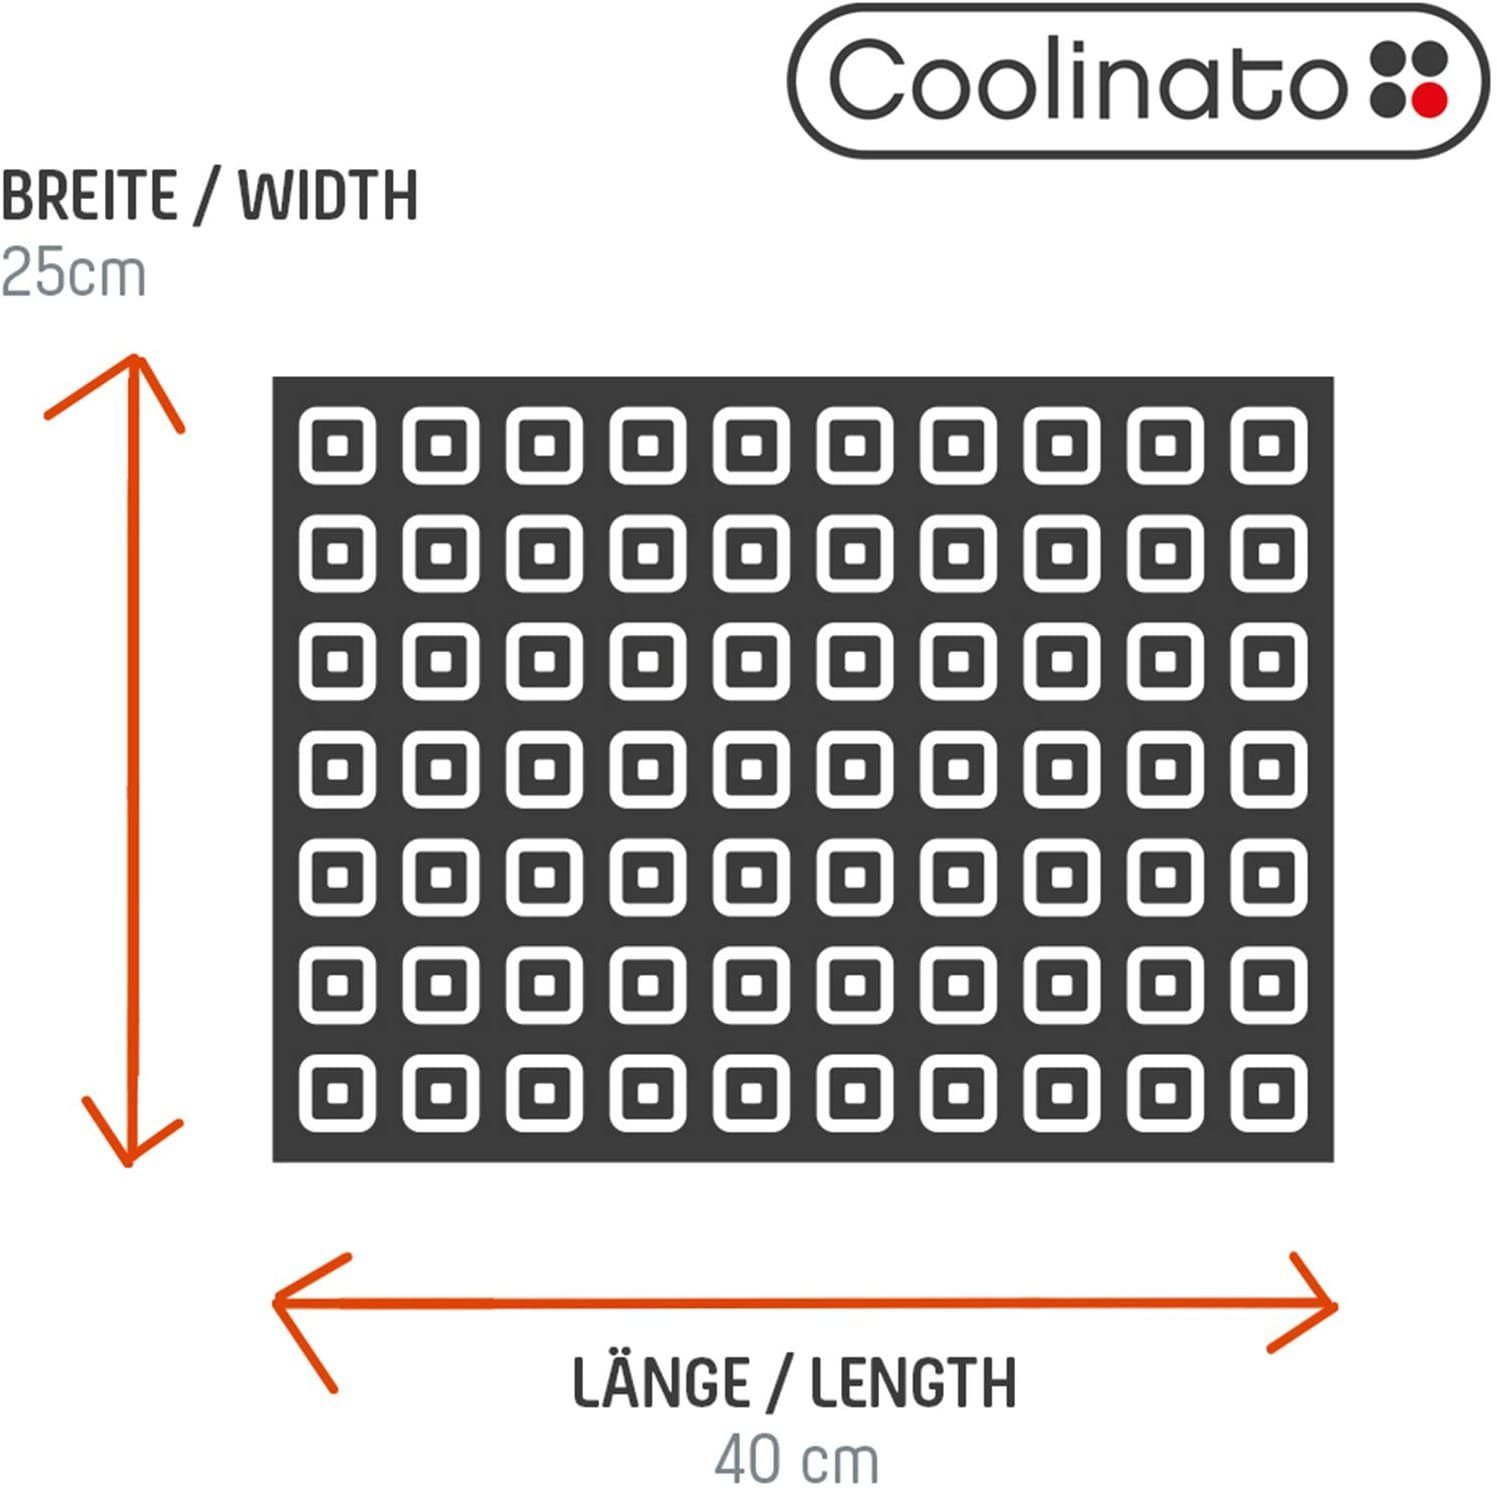 Platin Matte, antihaftbeschichtet Coolinato Backmatte Fett-Weg Silikon, 100%